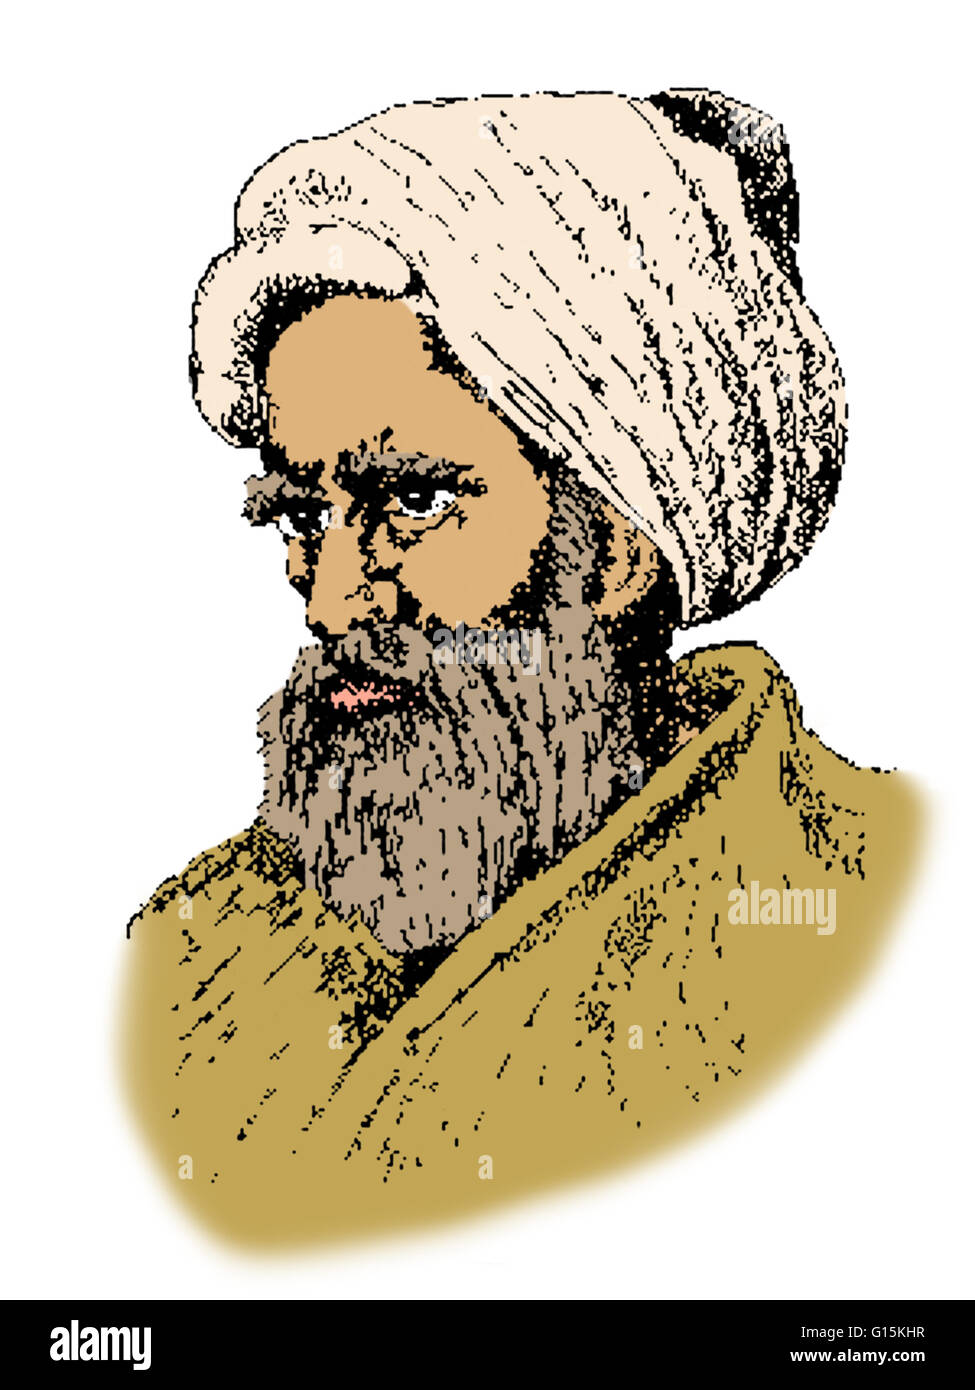 Colore esaltato ritratto di Abu Ali al-Hasan ibn al-Hasan ibn al-Haytham (Alhacen, Alhazen) (965-1040) era un musulmano, scienziato e polymath descritto in varie fonti come o arabo o persiano. Egli è spesso riferito come Ibn al-Haytham o al-Basri Foto Stock